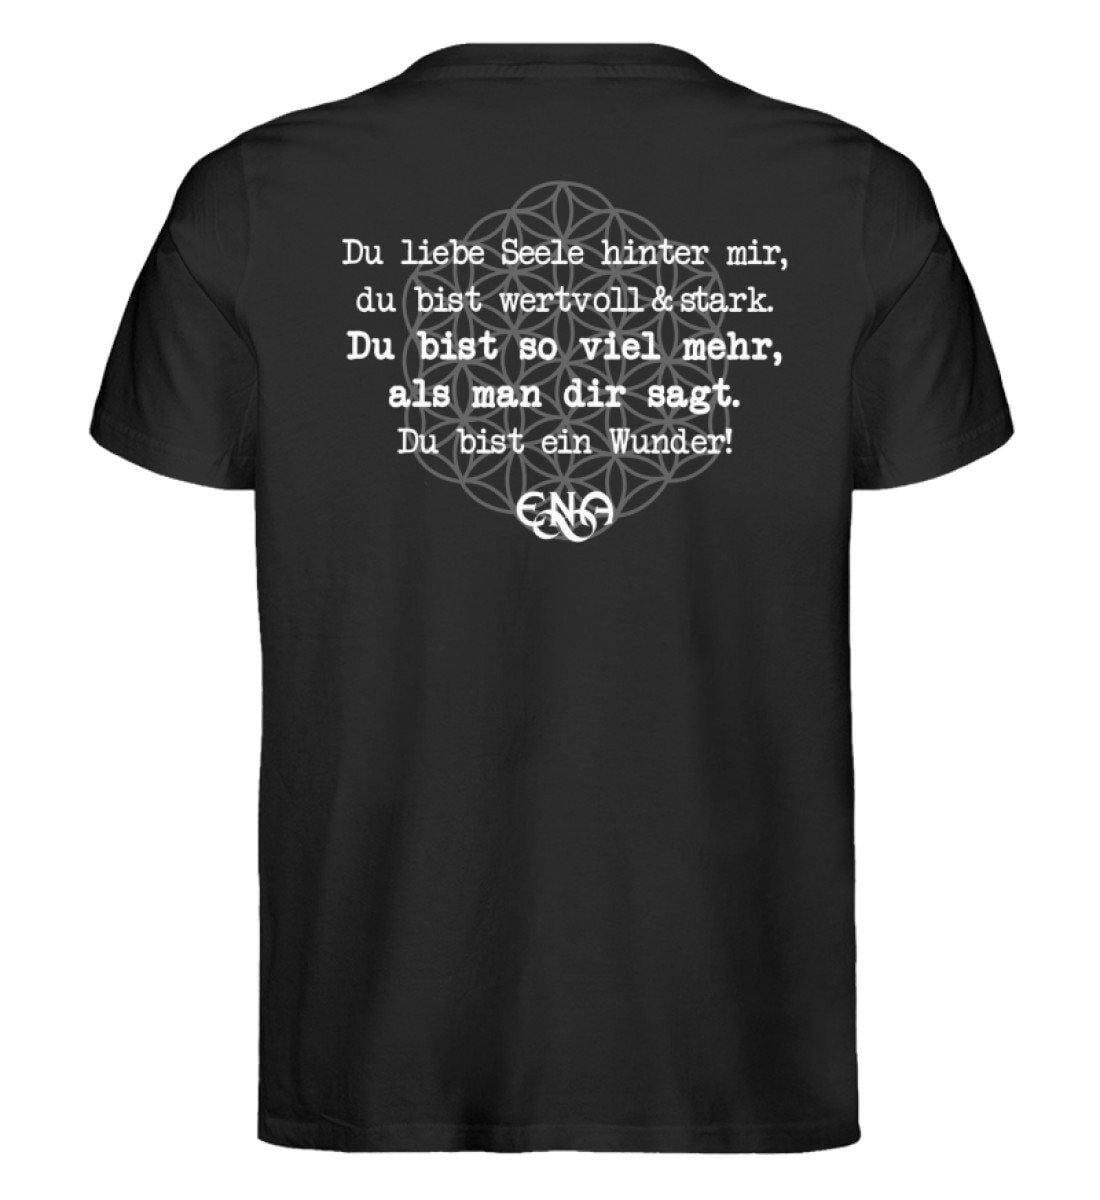 Du liebe Seele hinter mir ... [ENA] - Unisex Organic Shirt Rocker T-Shirt ST/ST Shirtee Schwarz S 